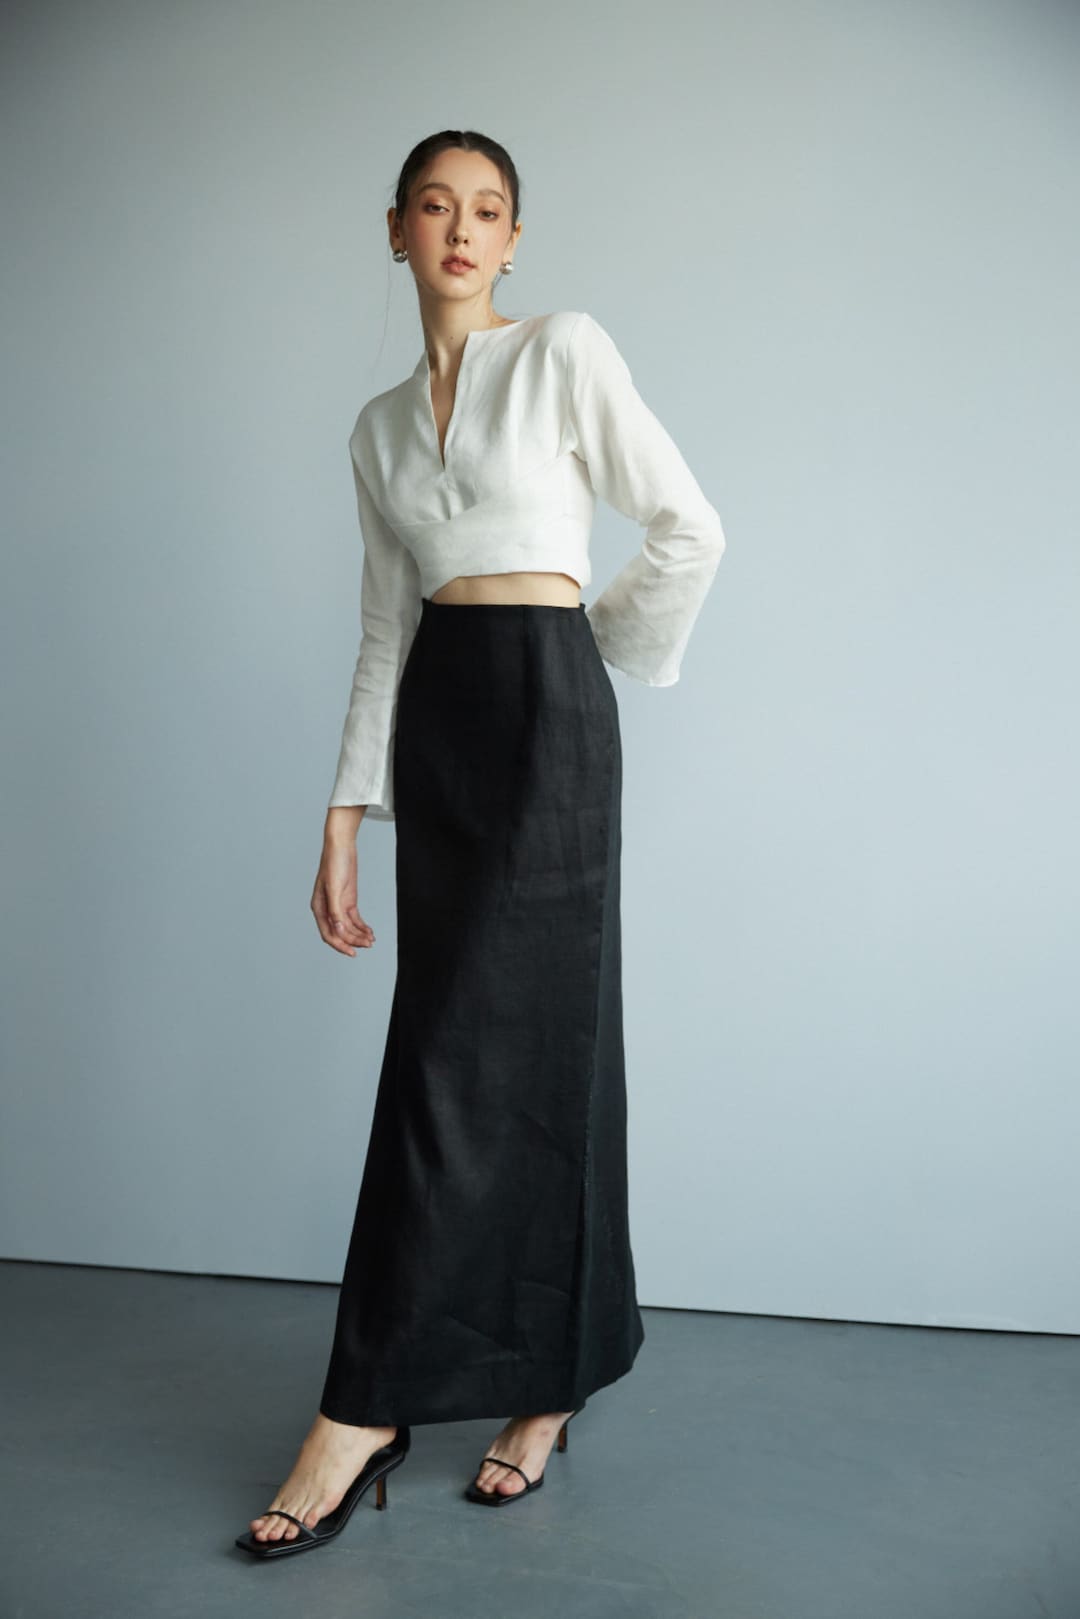 100% Premium Linen Skirt Maxi Skirt High Waisted Skirt Long Skirt ...